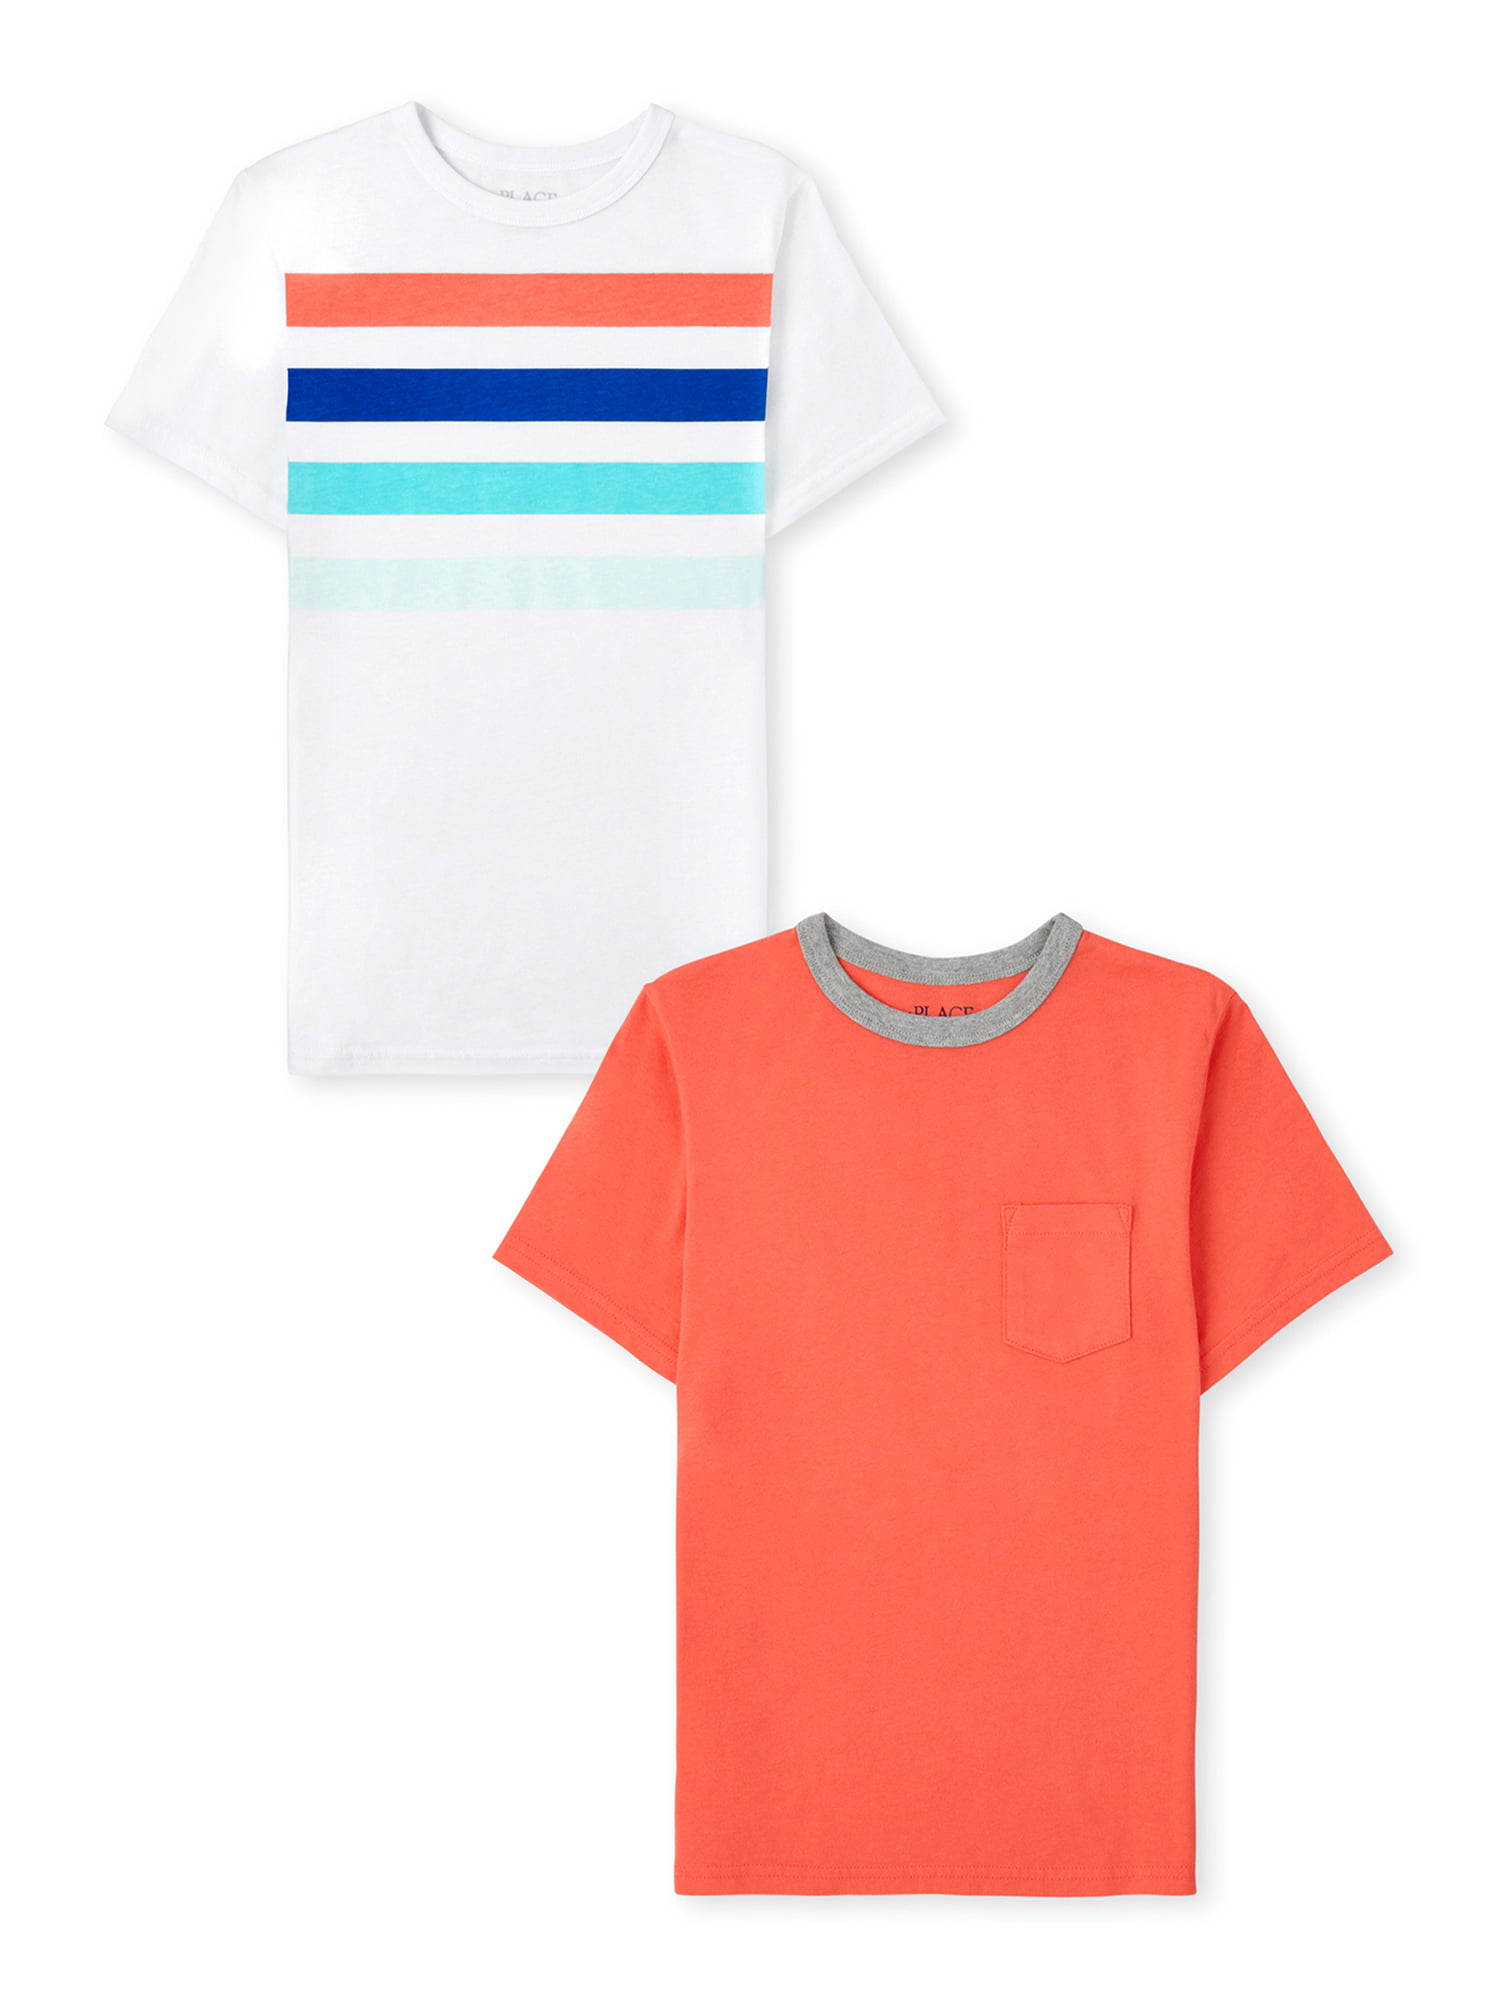 18M-2T-3T-4T-5T Boys Toddler Orange Short Sleeve V-Neck T-Shirt 